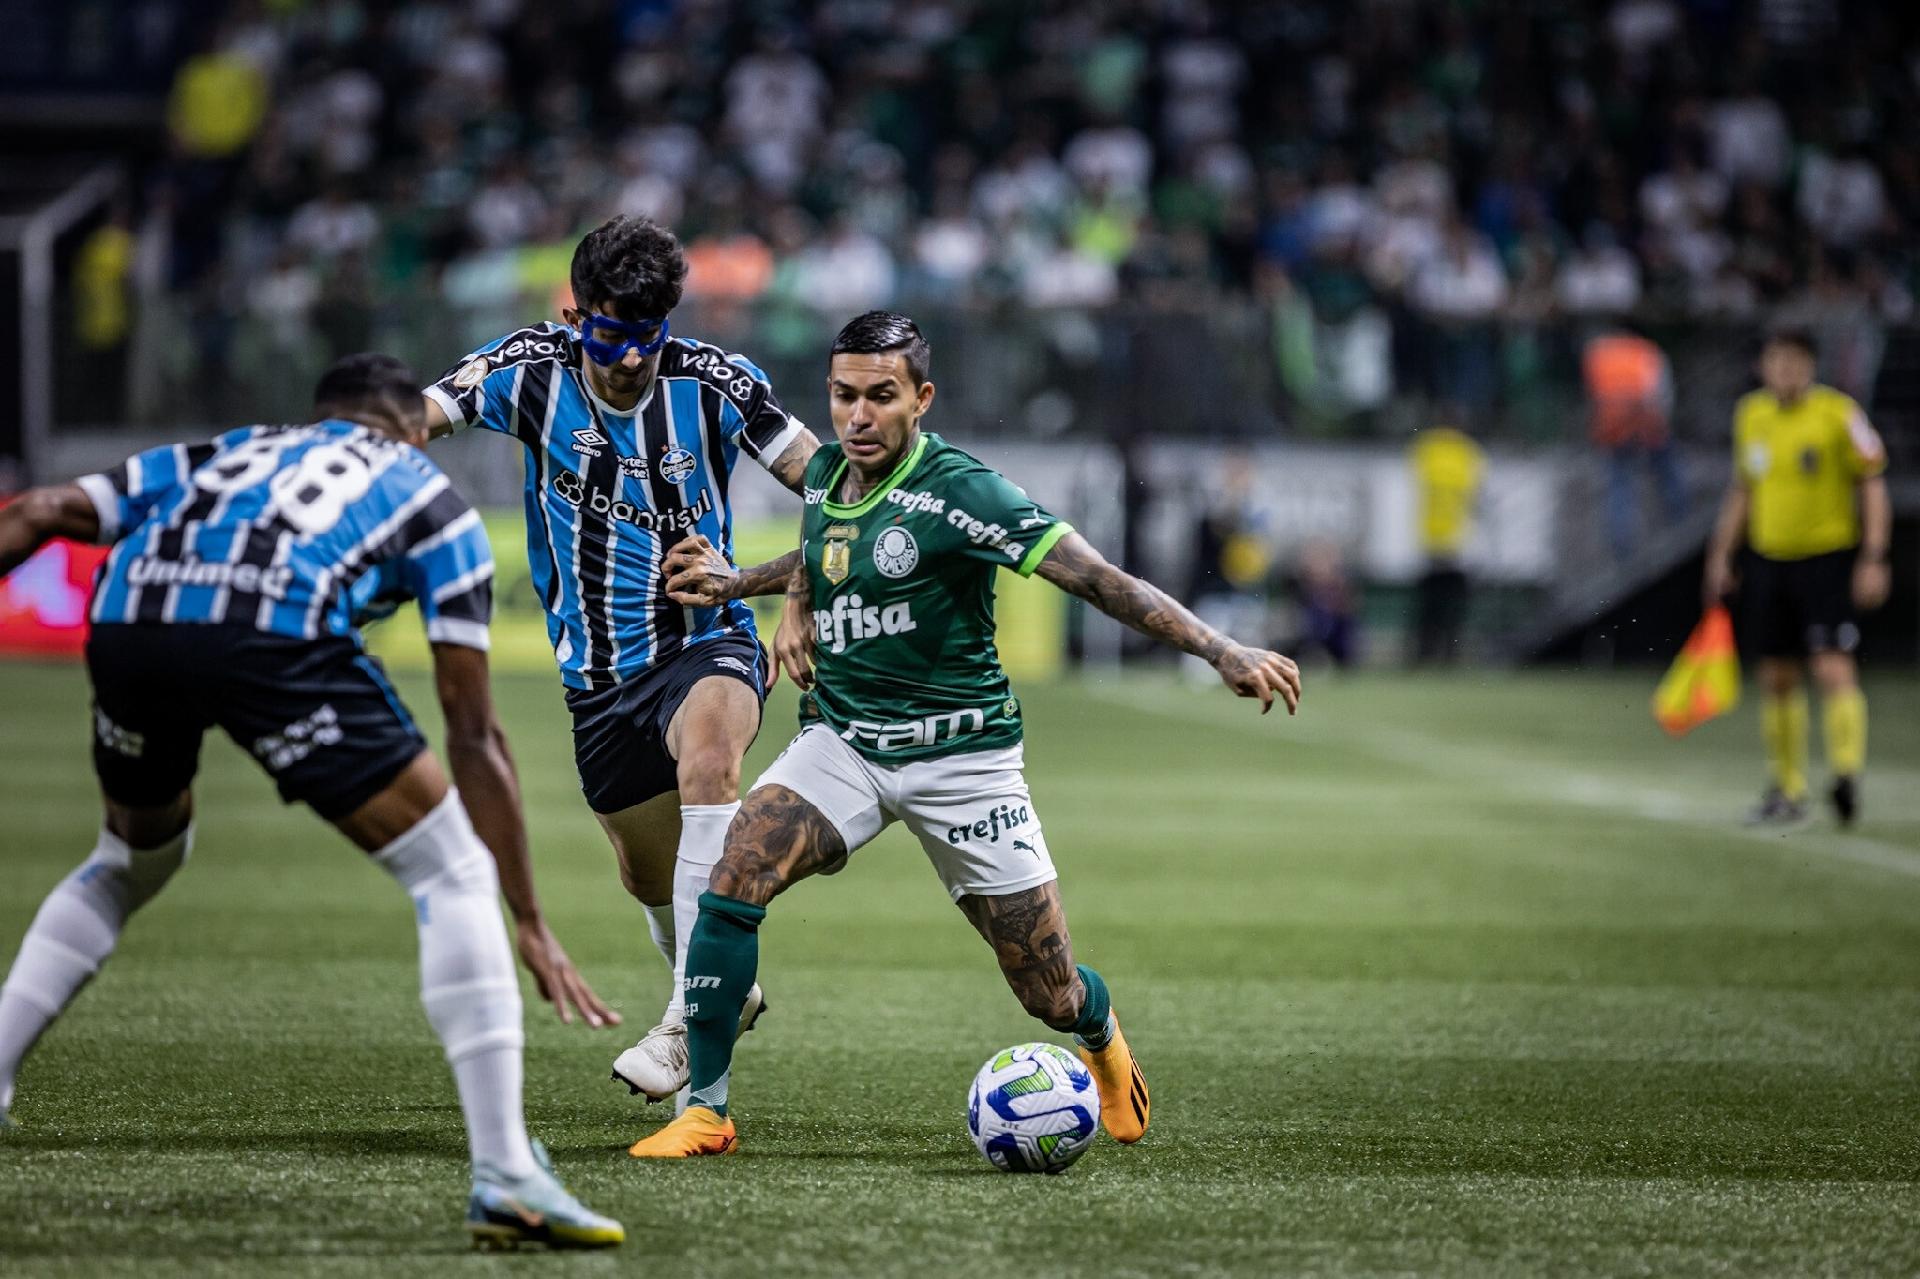 Palmeiras vs Tombense: A Clash of Titans in the Copa do Brasil